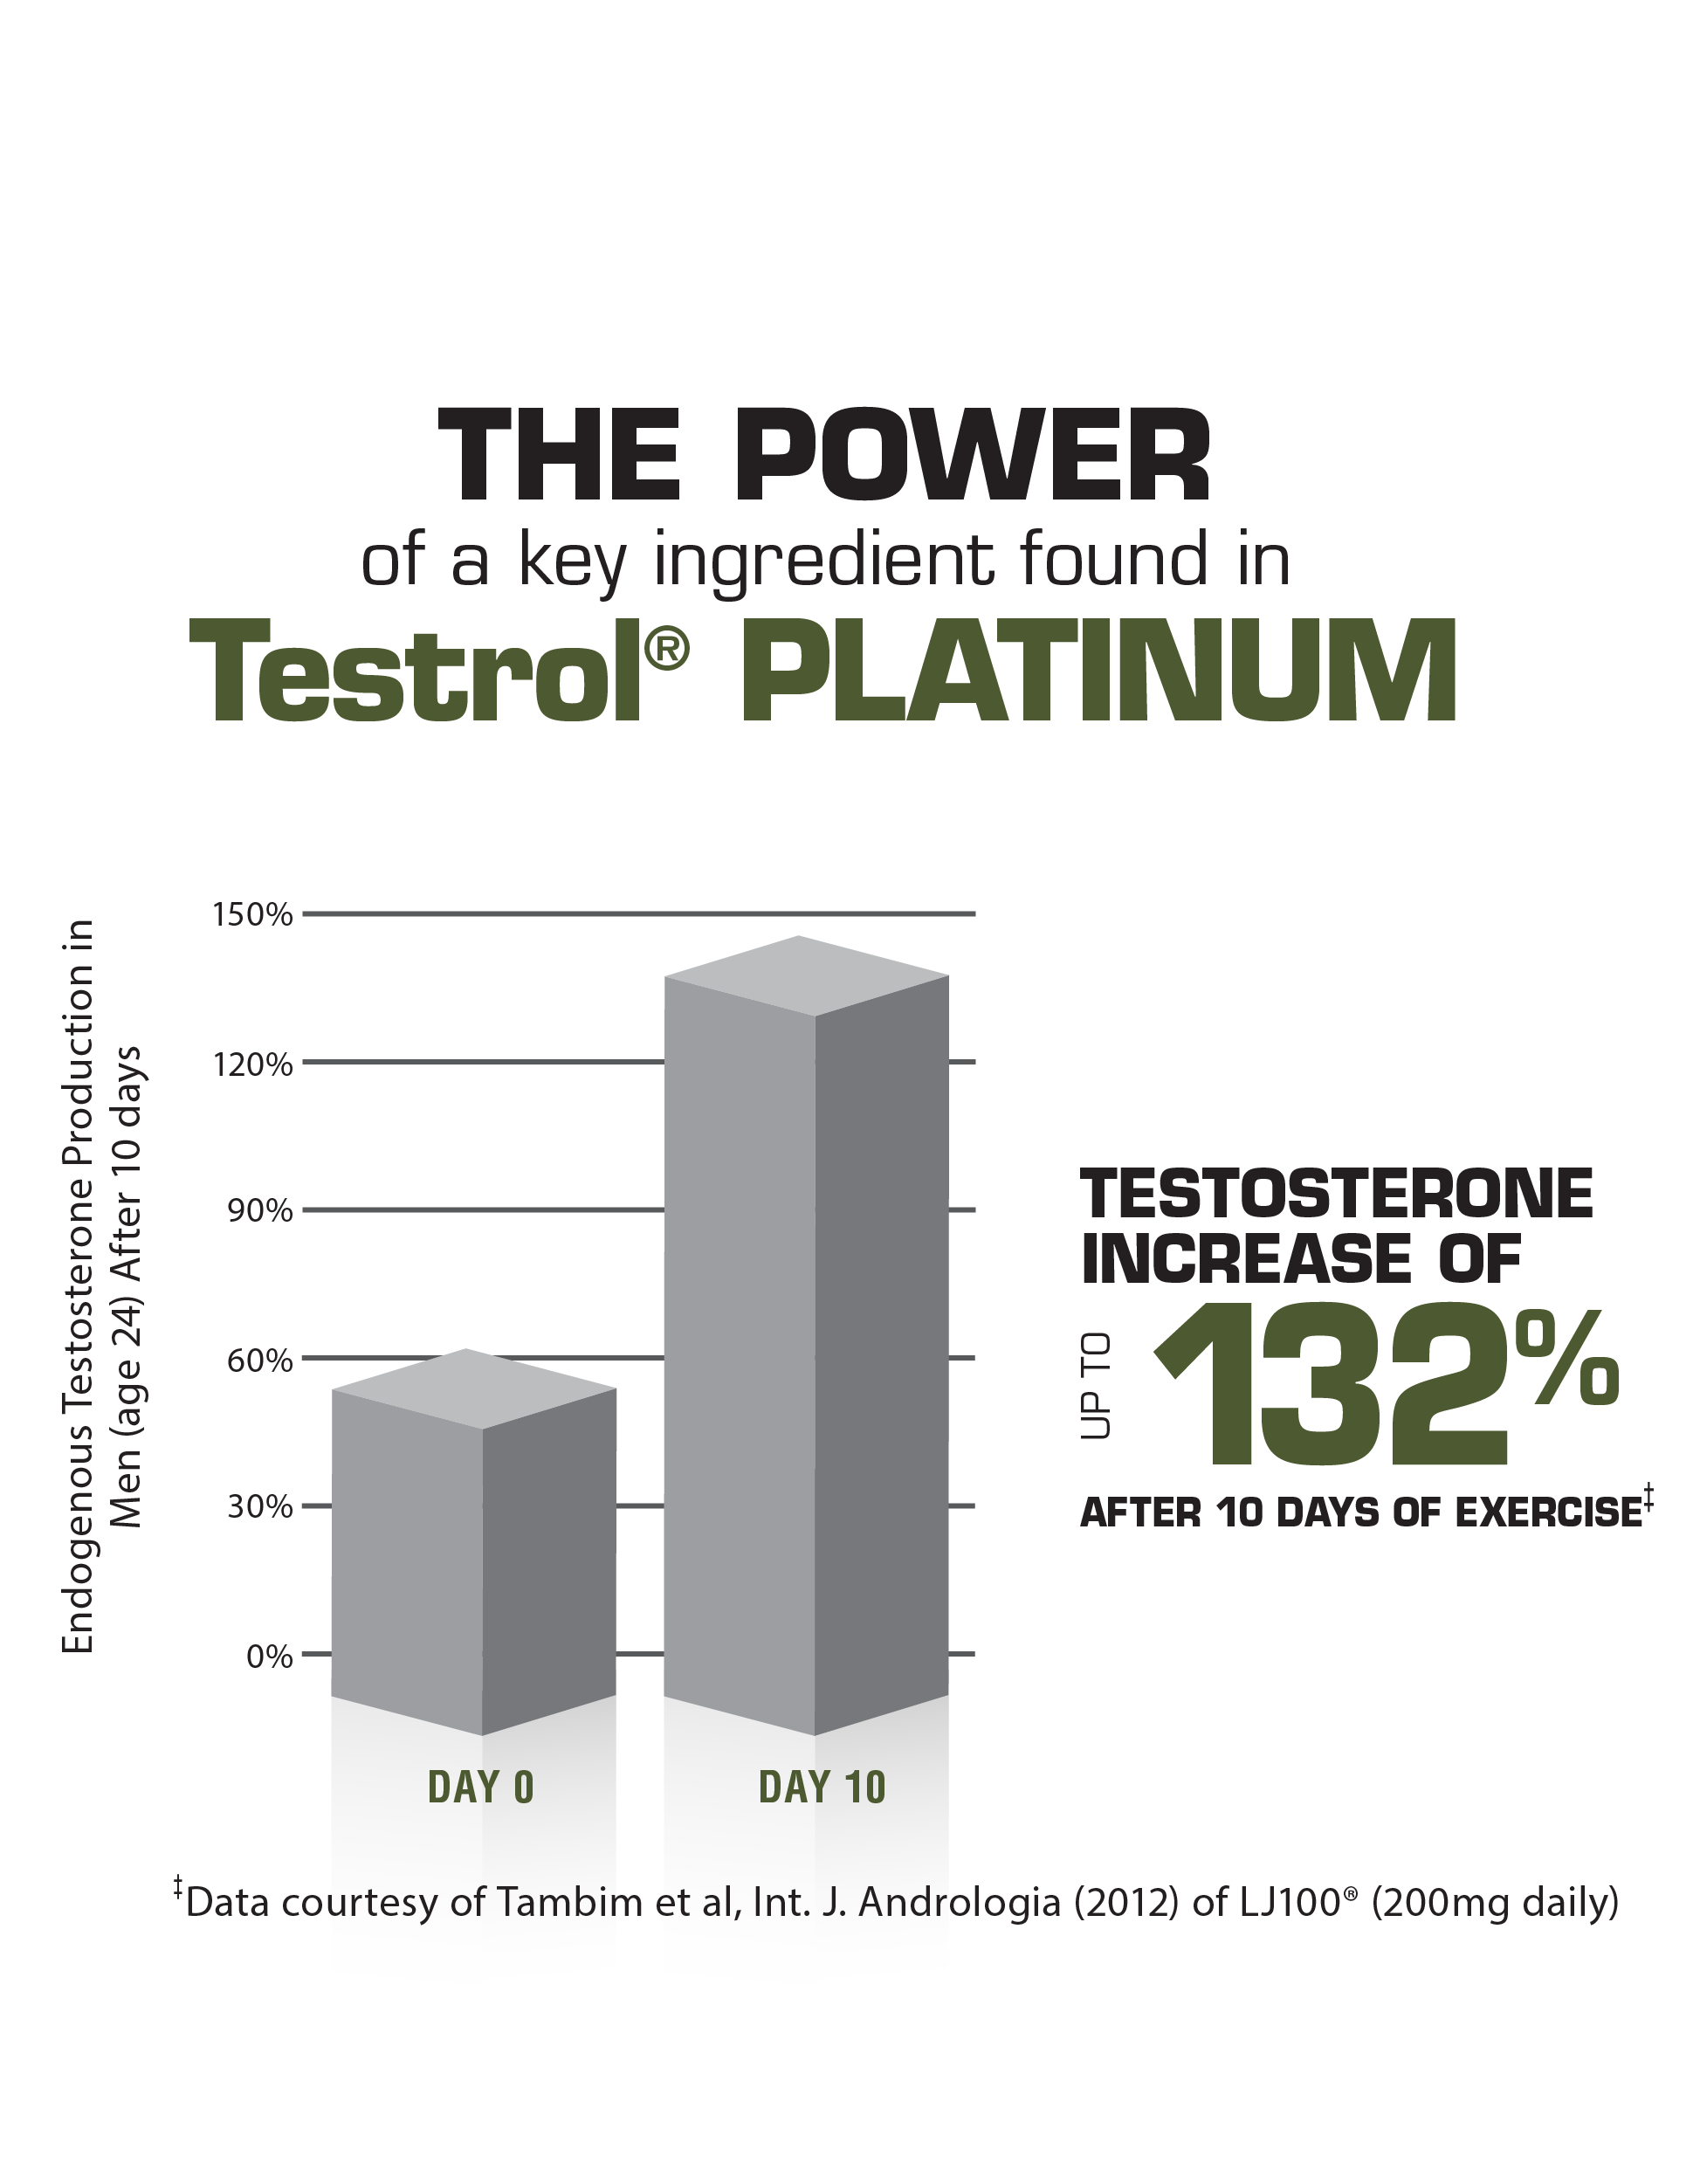 Tabla Testrol Platinum, hasta un 132% de aumento de testosterona después de 10 días de ejercicio